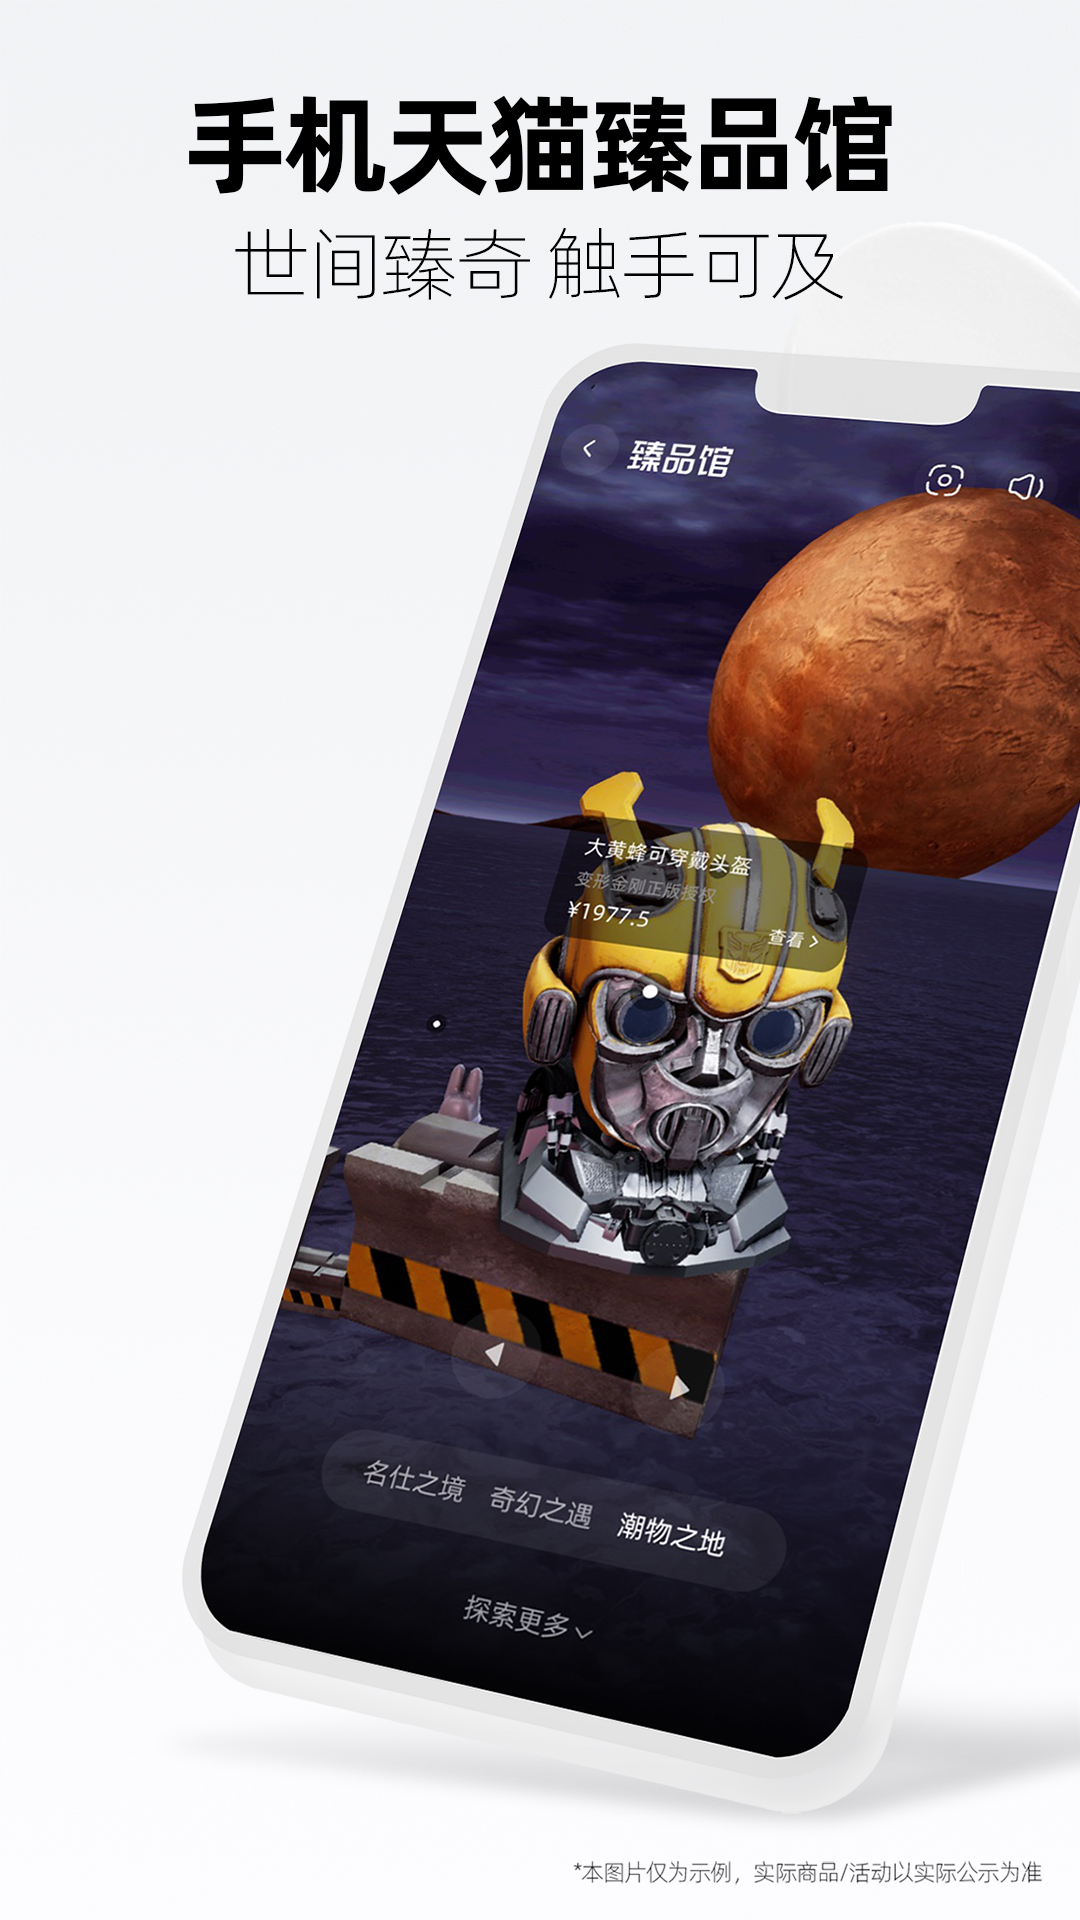 天猫(淘宝商城) for Android